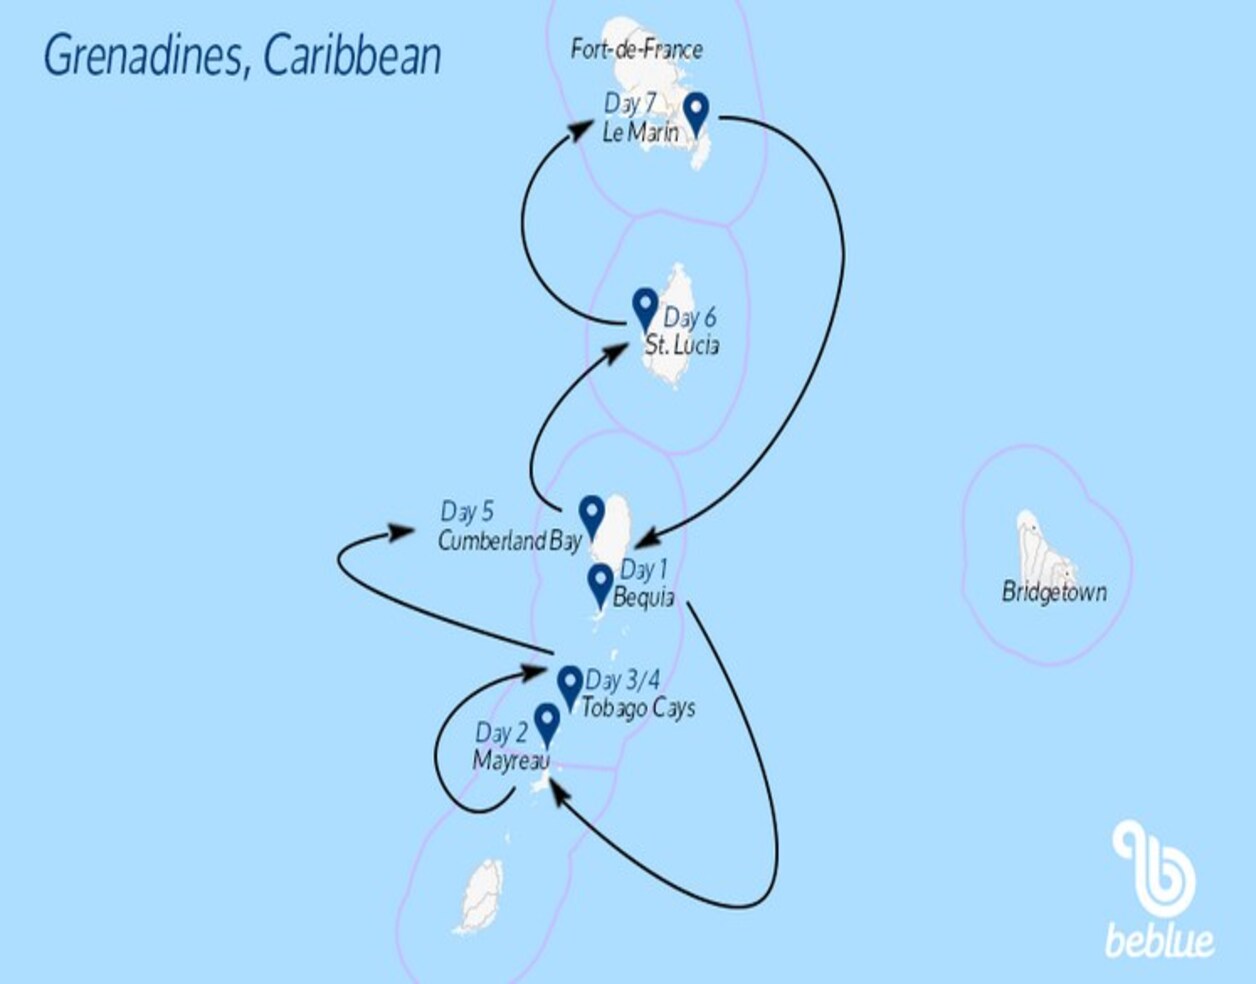 Caraibi: Grenadine e Tobago Cays  da martinica - ID 520